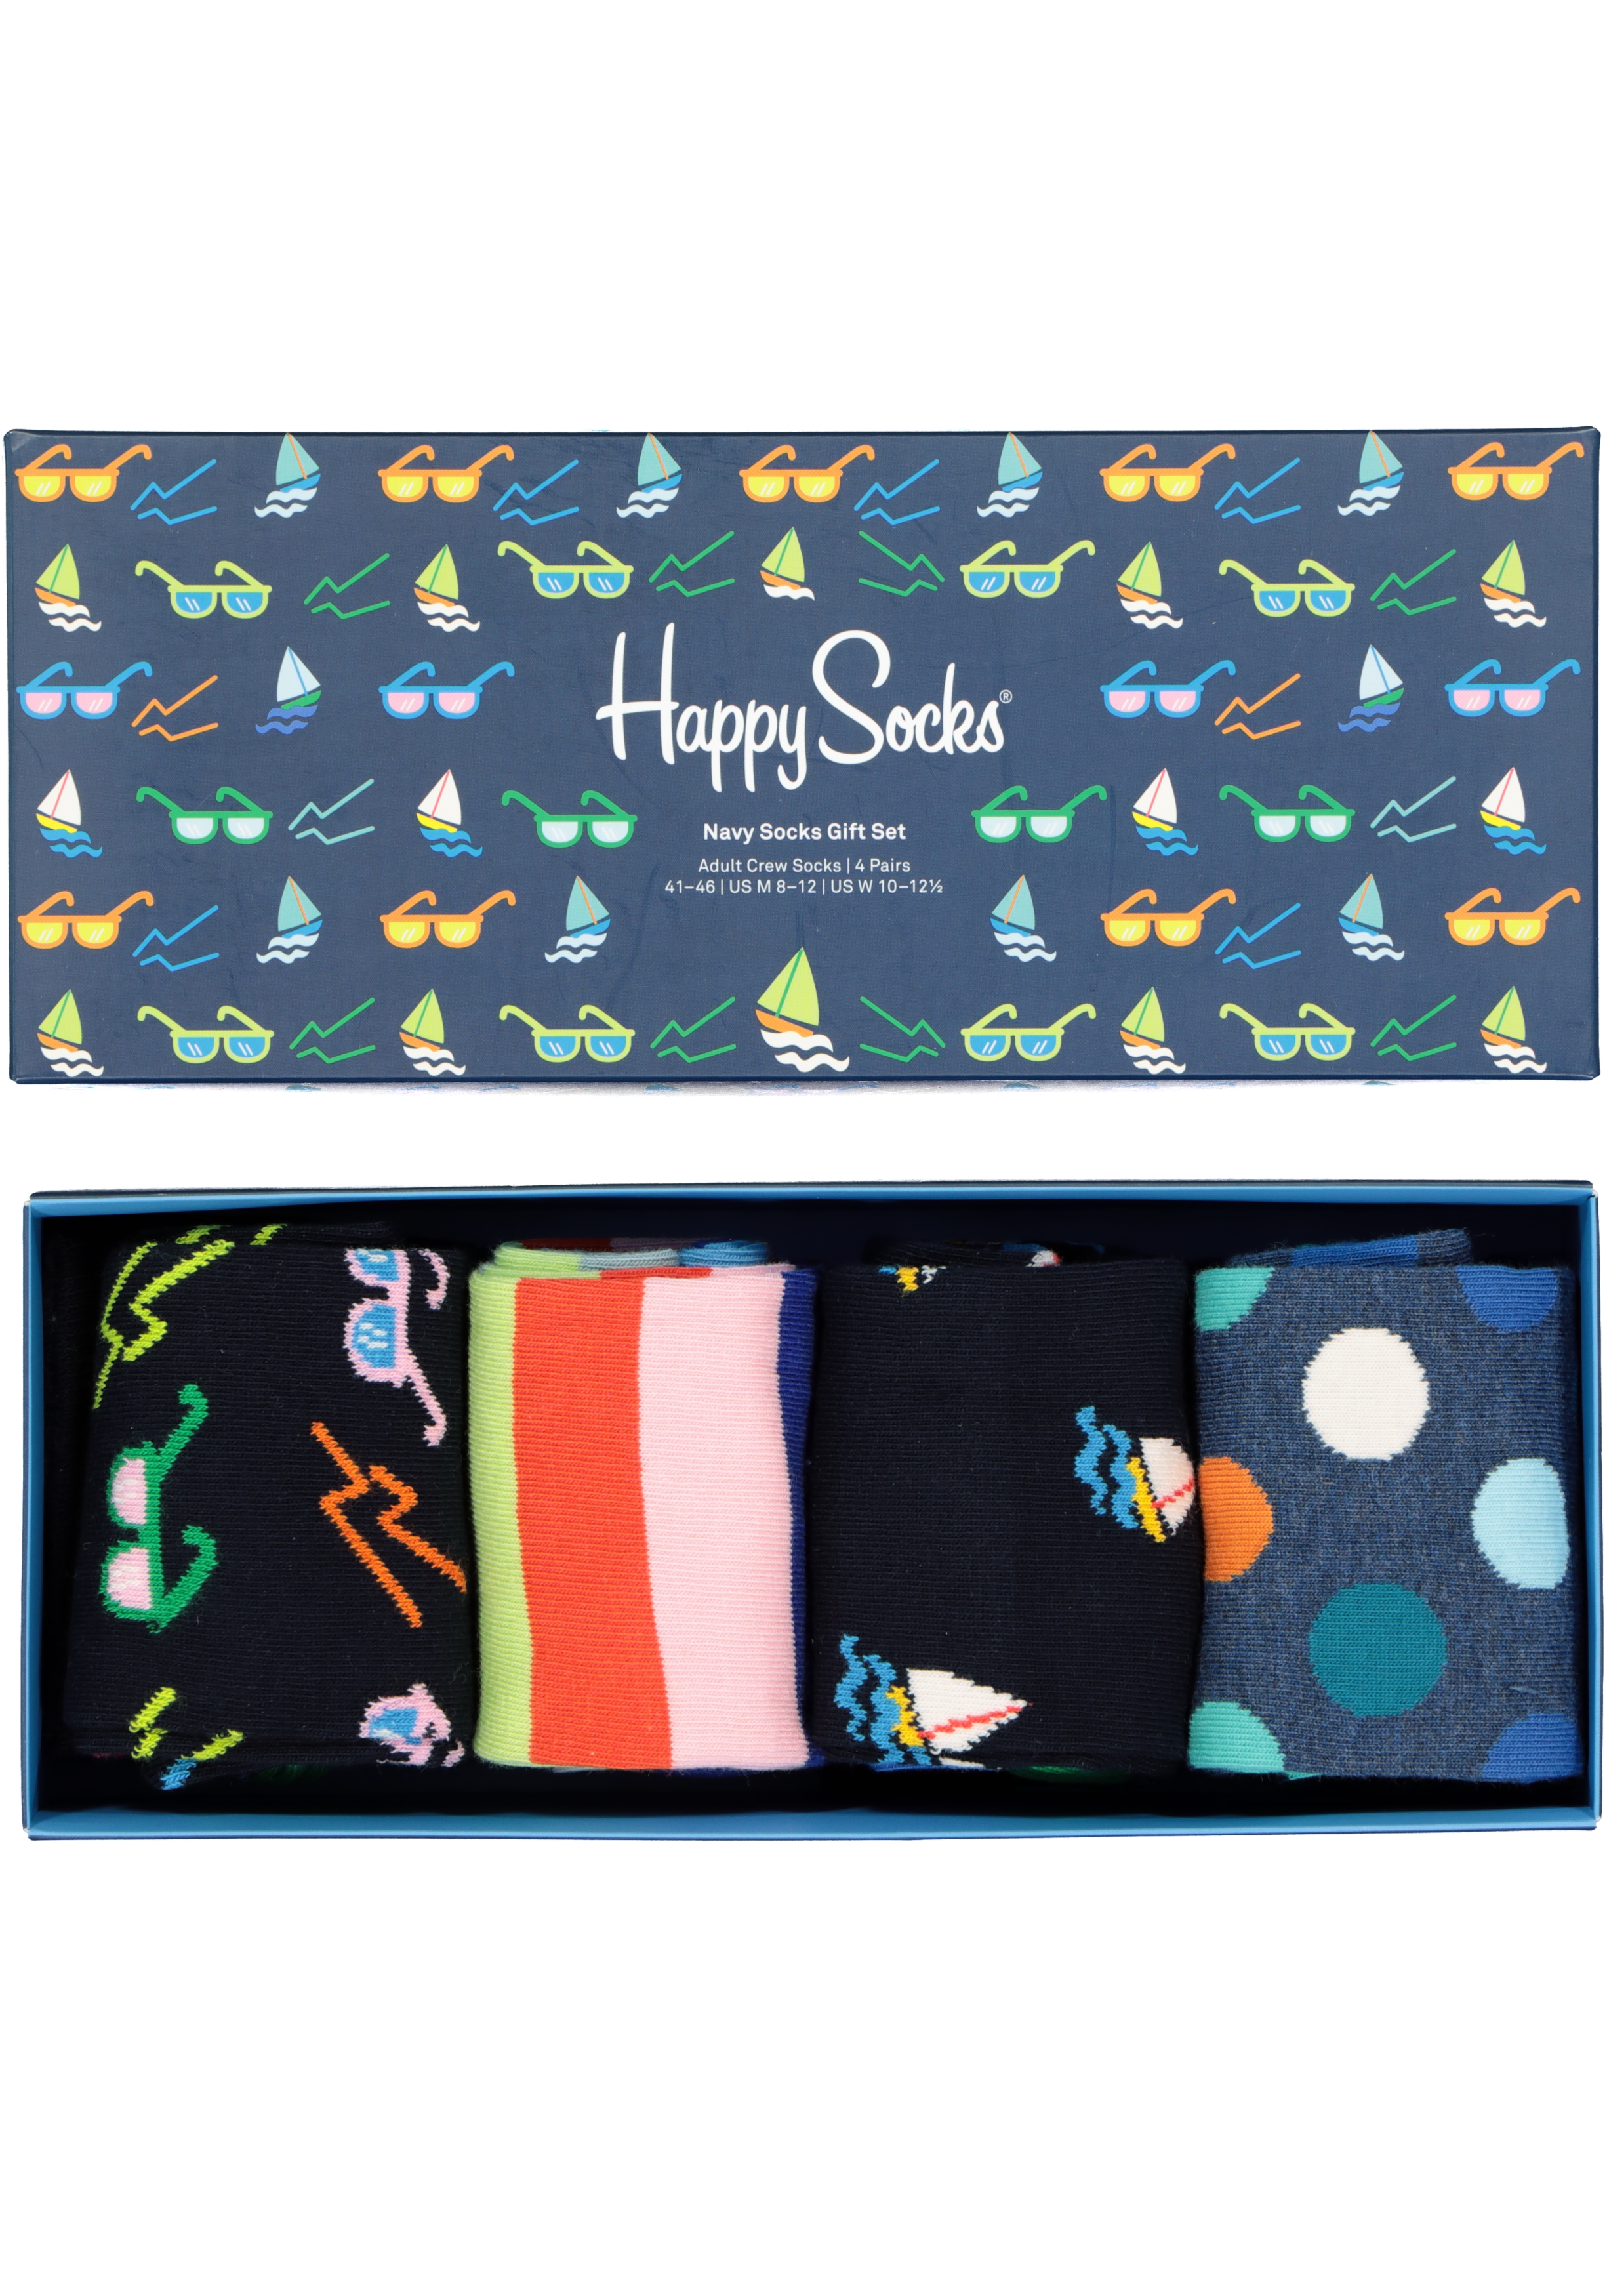 Happy Socks Navy Socks Gift Set (4-pack), blauw met zon en kleur